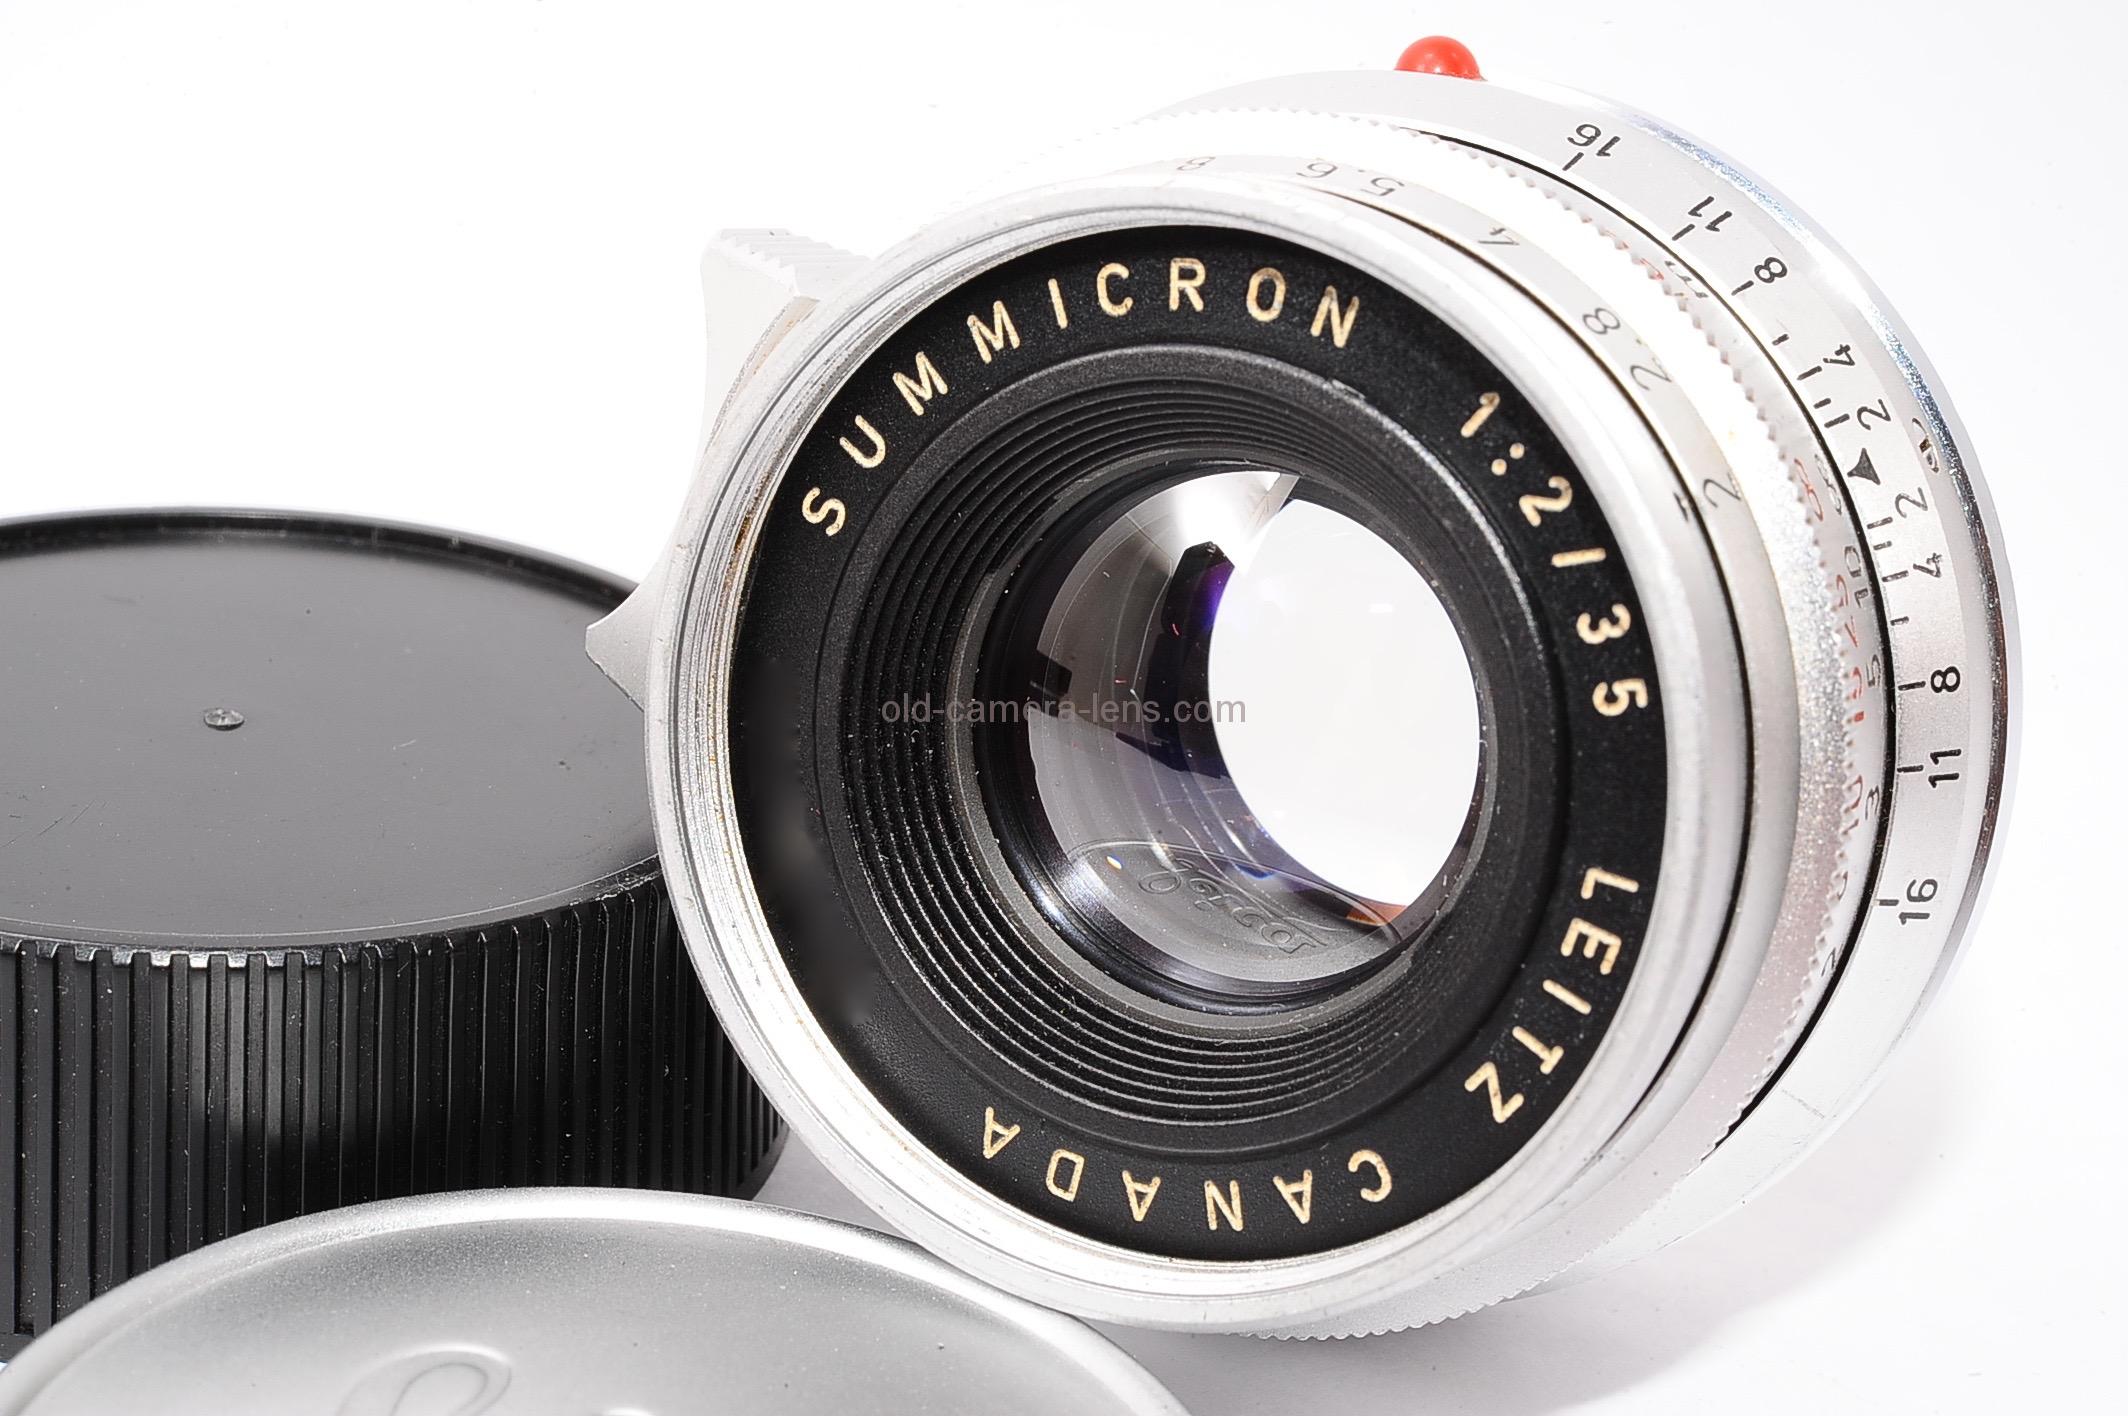 ライカ ズミクロン 第一世代 8枚玉 (Leica Summicron) 35mm F2 / 1st 